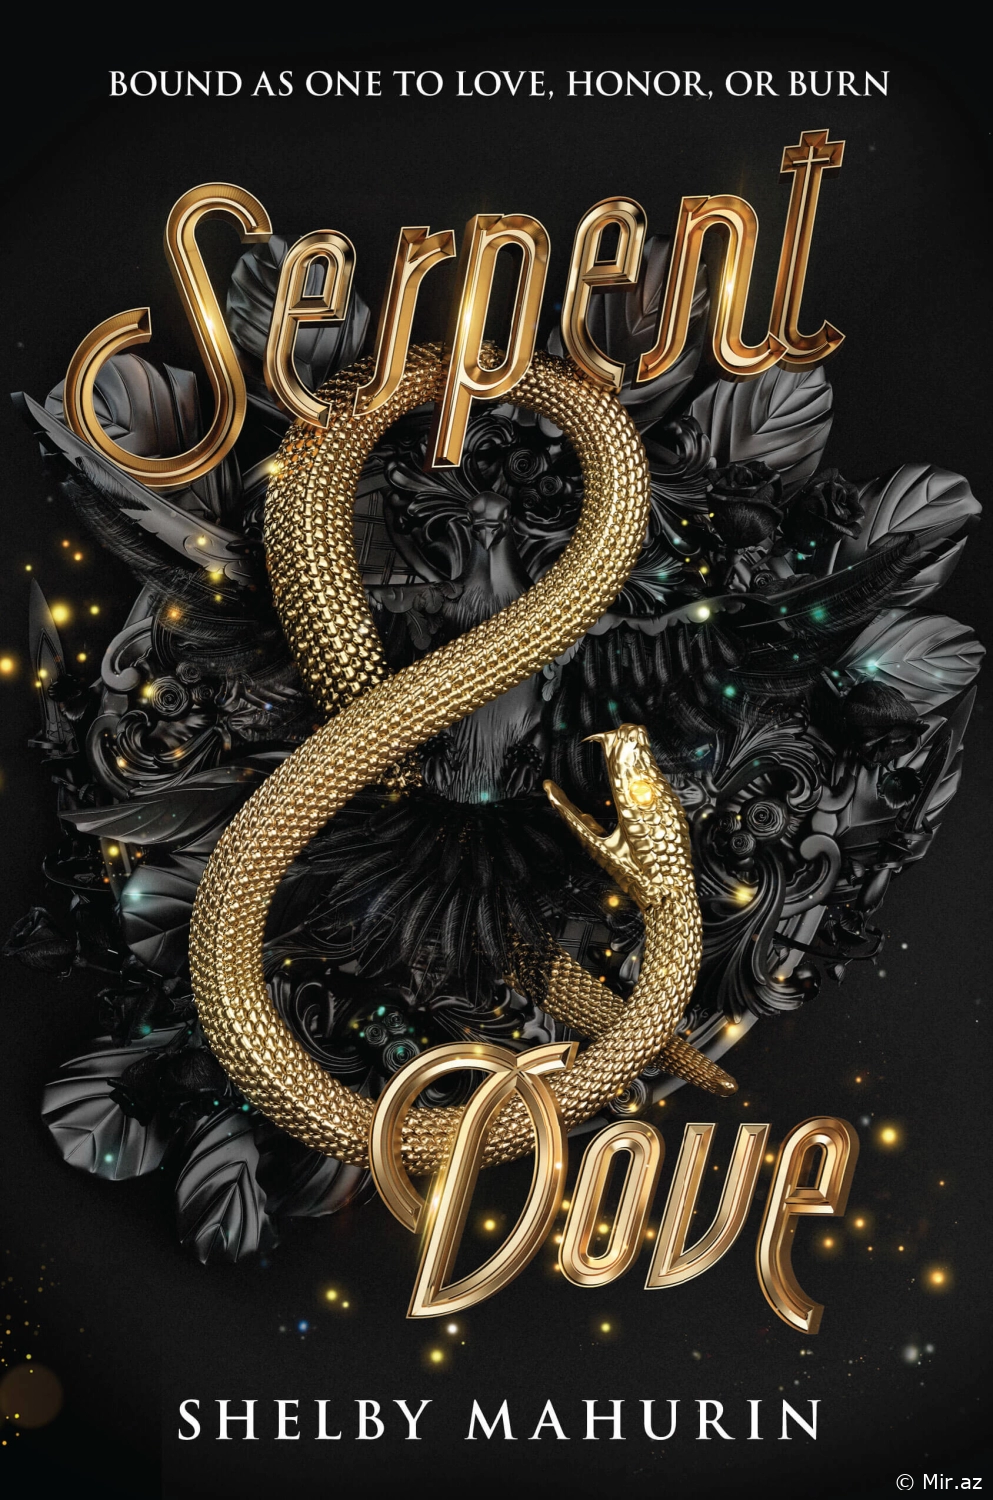 Shelby Mahurin "Serpent & Dove" PDF